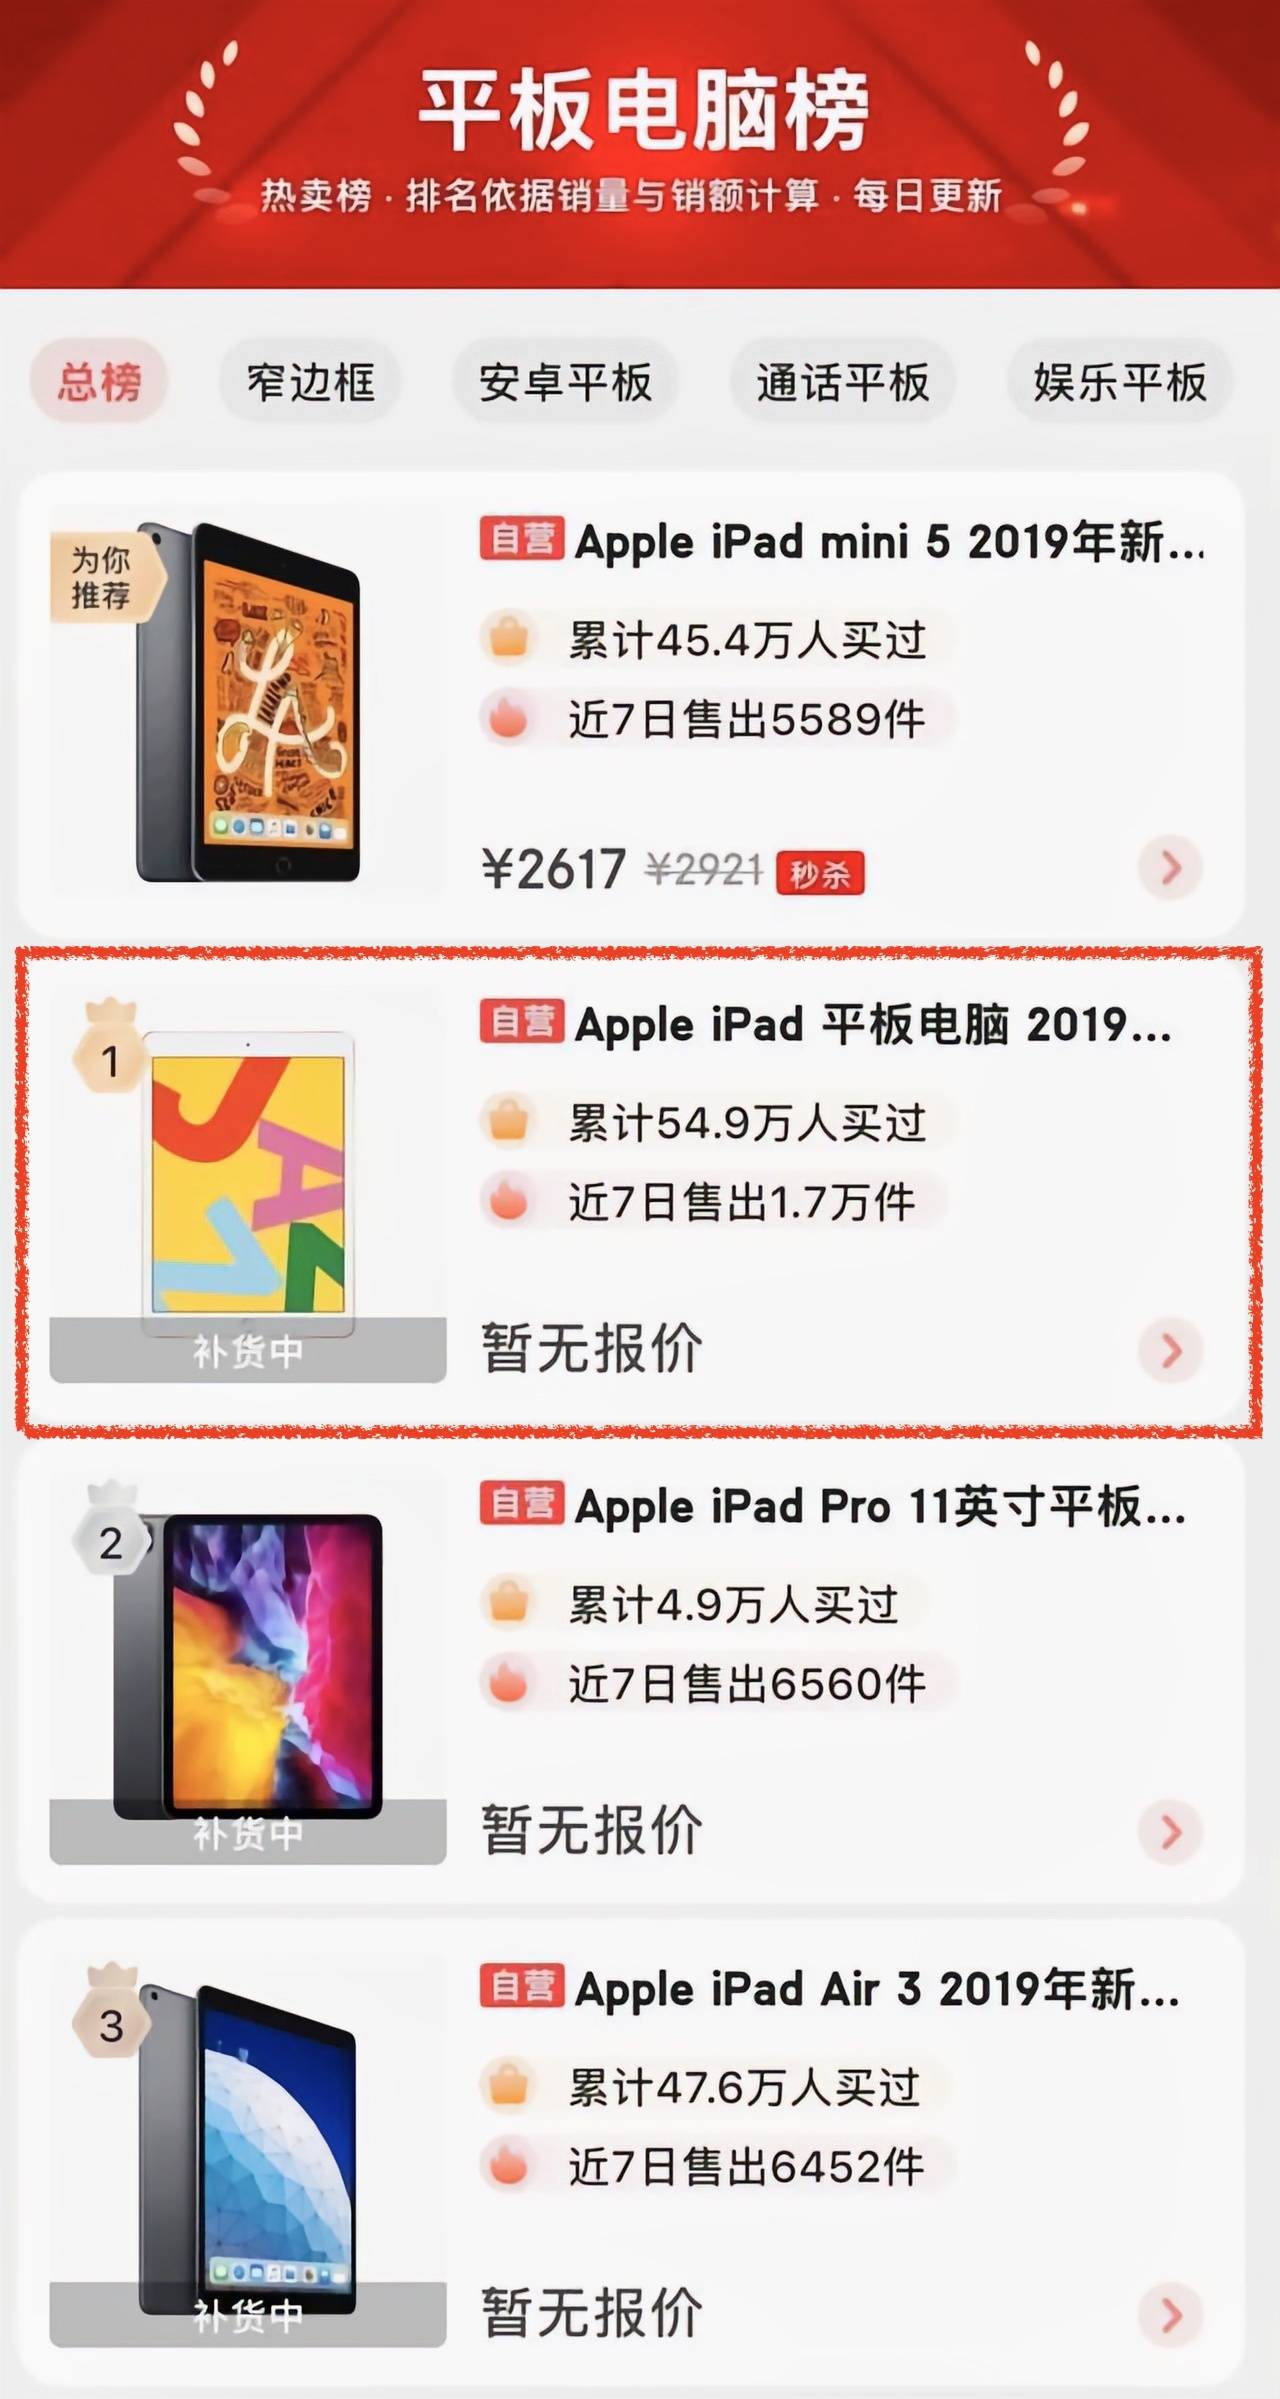 IMG 20200927 090830 - Recensione iPad 8: anche il valore è eccezionale, potrebbe essere la prima scelta per tablet per 3000 yuan